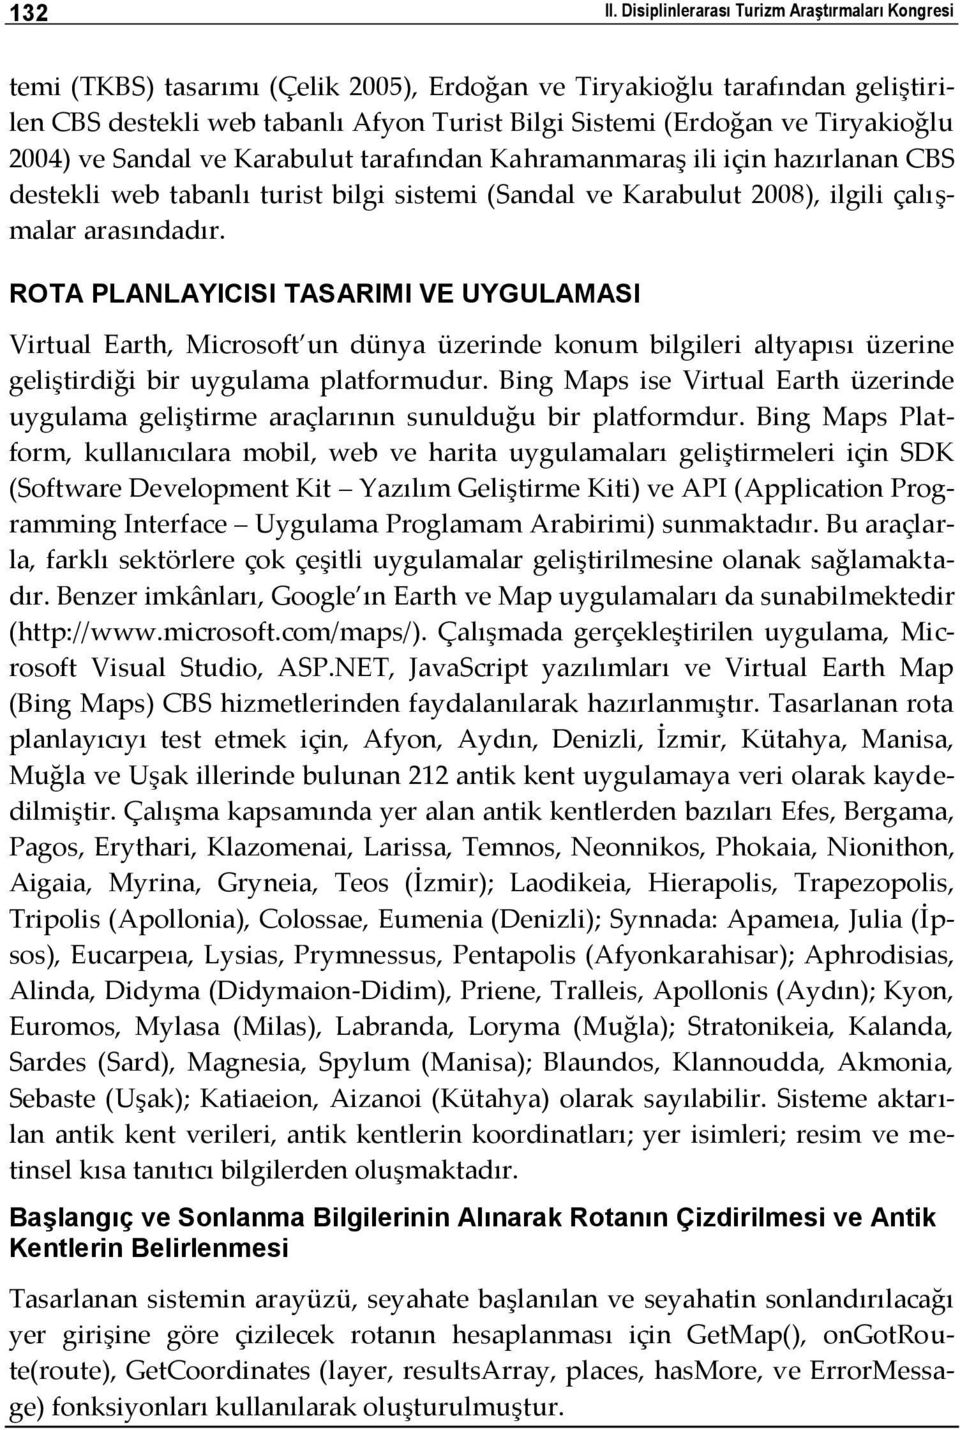 Tiryakioğlu 2004) ve Sandal ve Karabulut tarafından Kahramanmaraş ili için hazırlanan CBS destekli web tabanlı turist bilgi sistemi (Sandal ve Karabulut 2008), ilgili çalışmalar arasındadır.